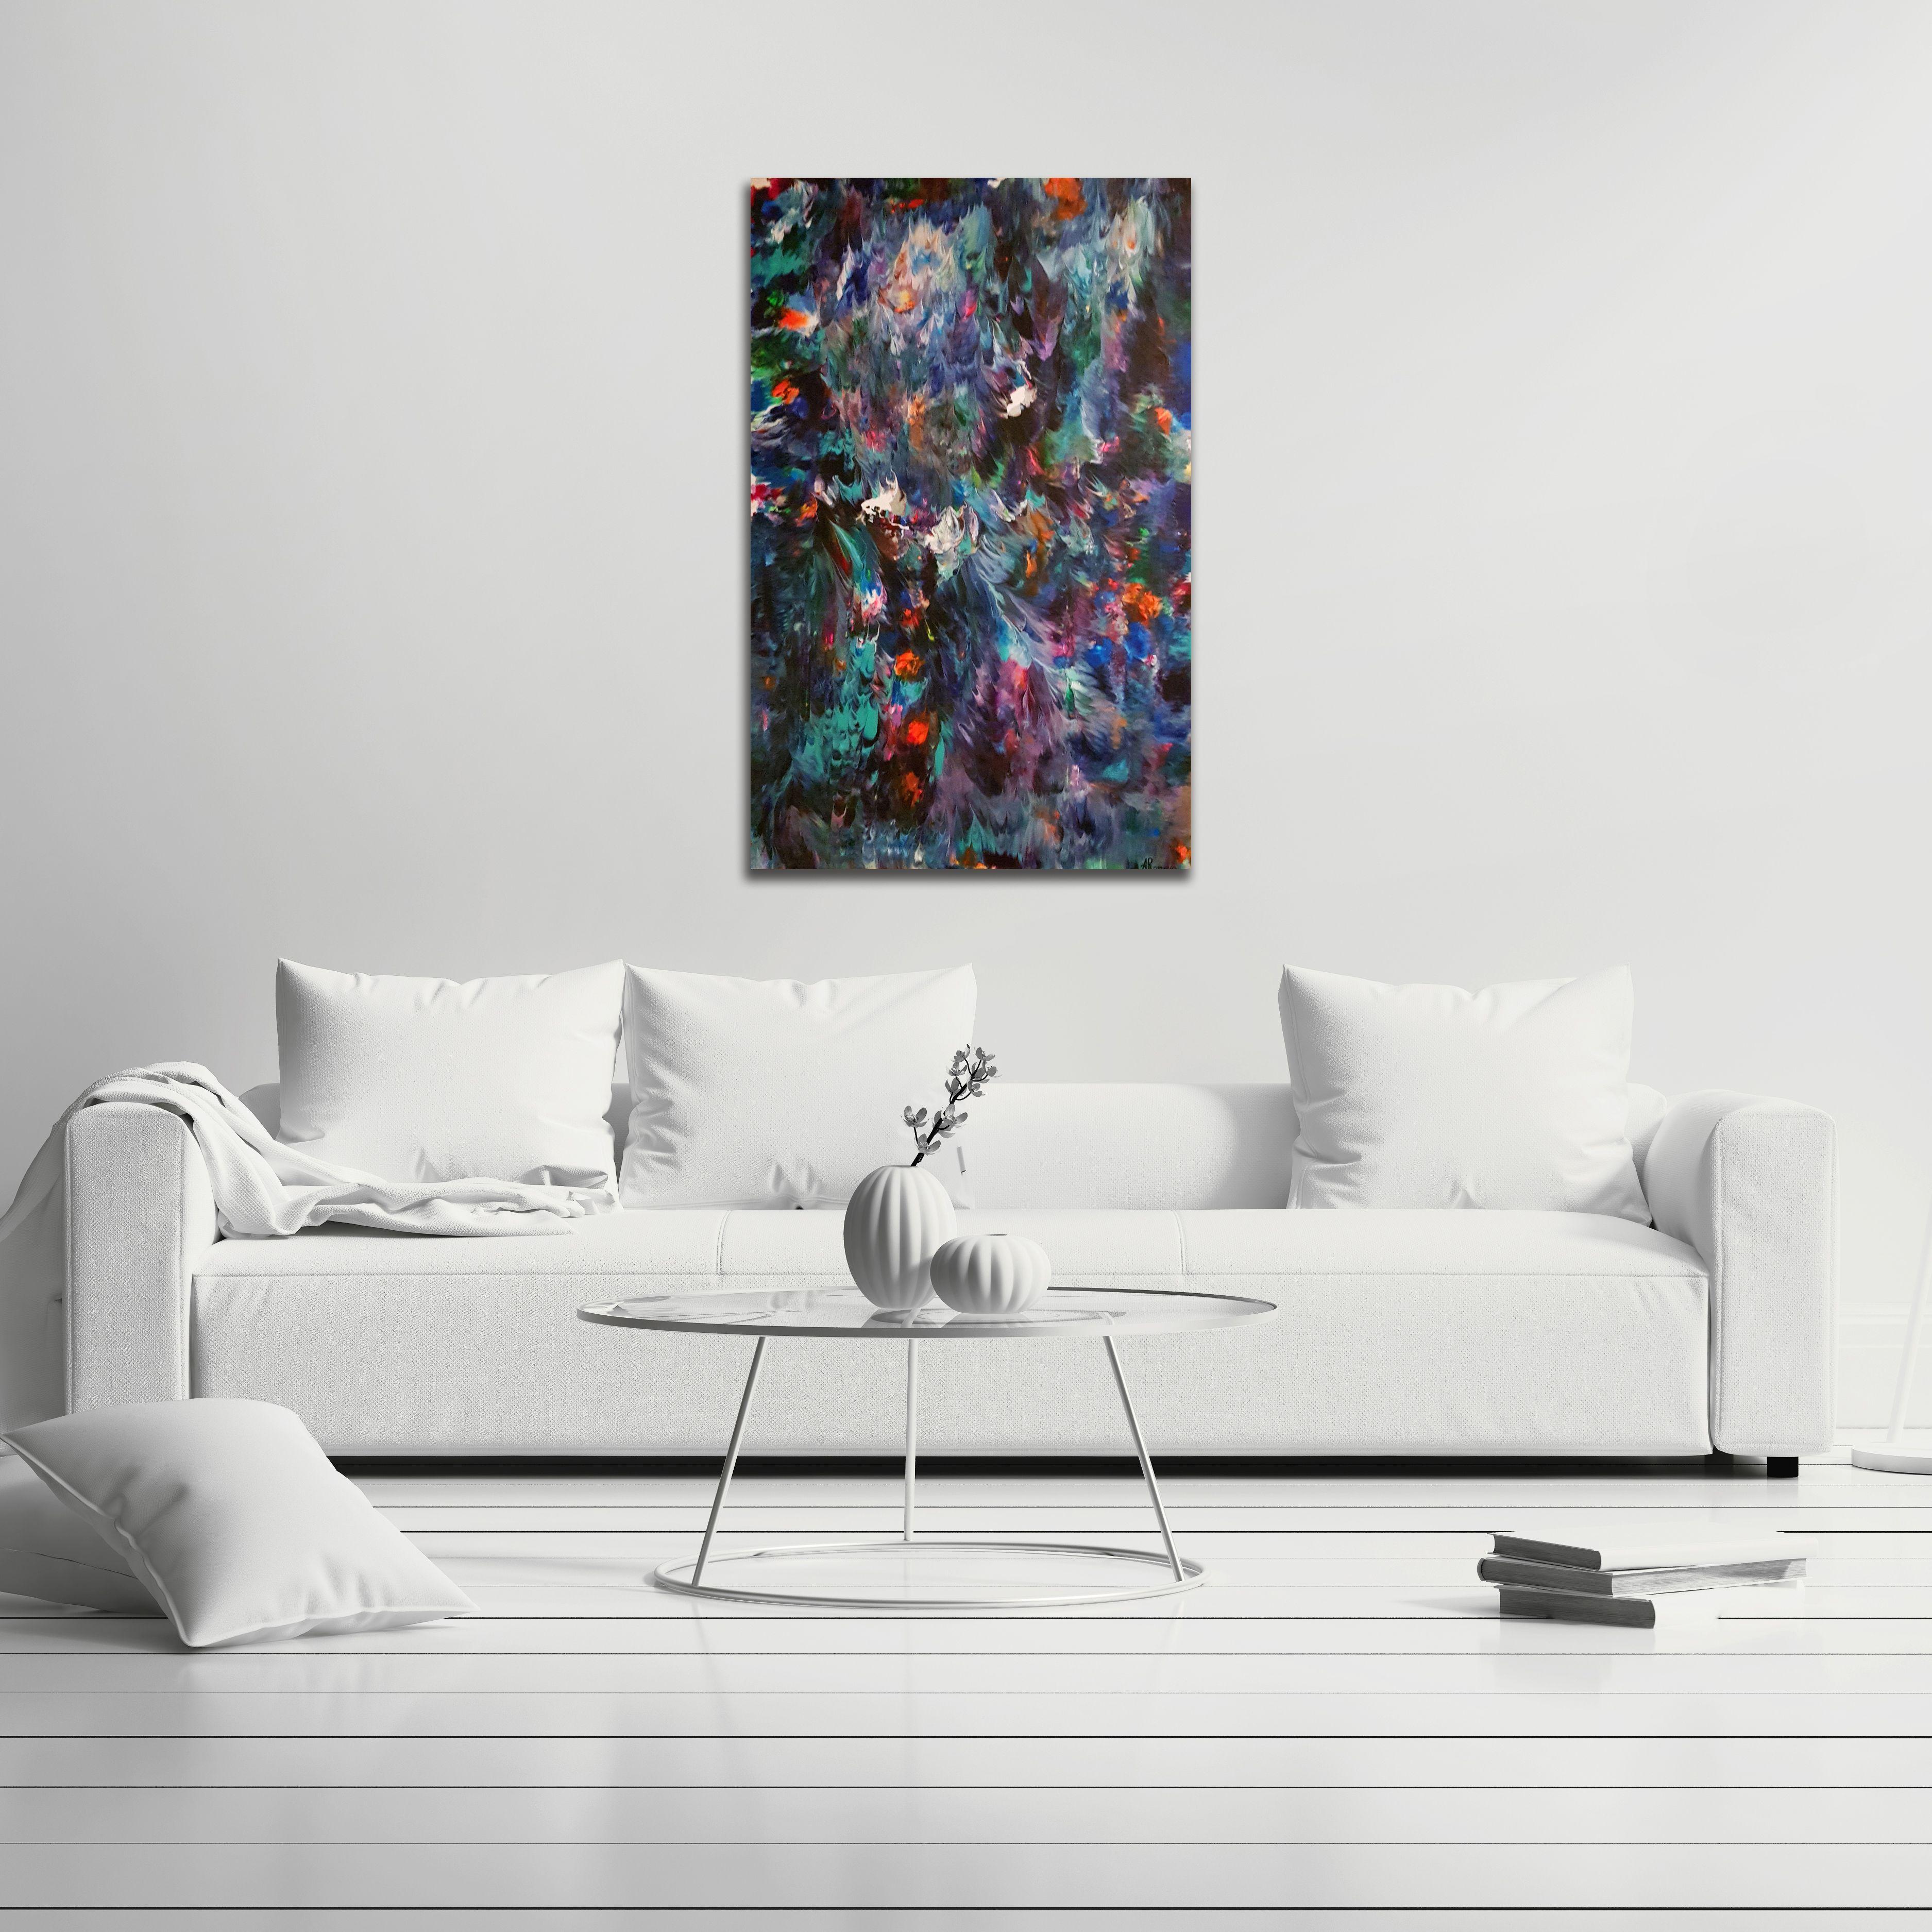 Das abstrakte expressionistische Gemälde Free Spirit No. 6 zeichnet sich durch kräftige Blautöne aus: Dunkles Marineblau, Violett und Türkis verschmelzen zu wilden Formen. Leuchtende Farben wie fluoreszierendes Orange, Pink und Grün werden durch